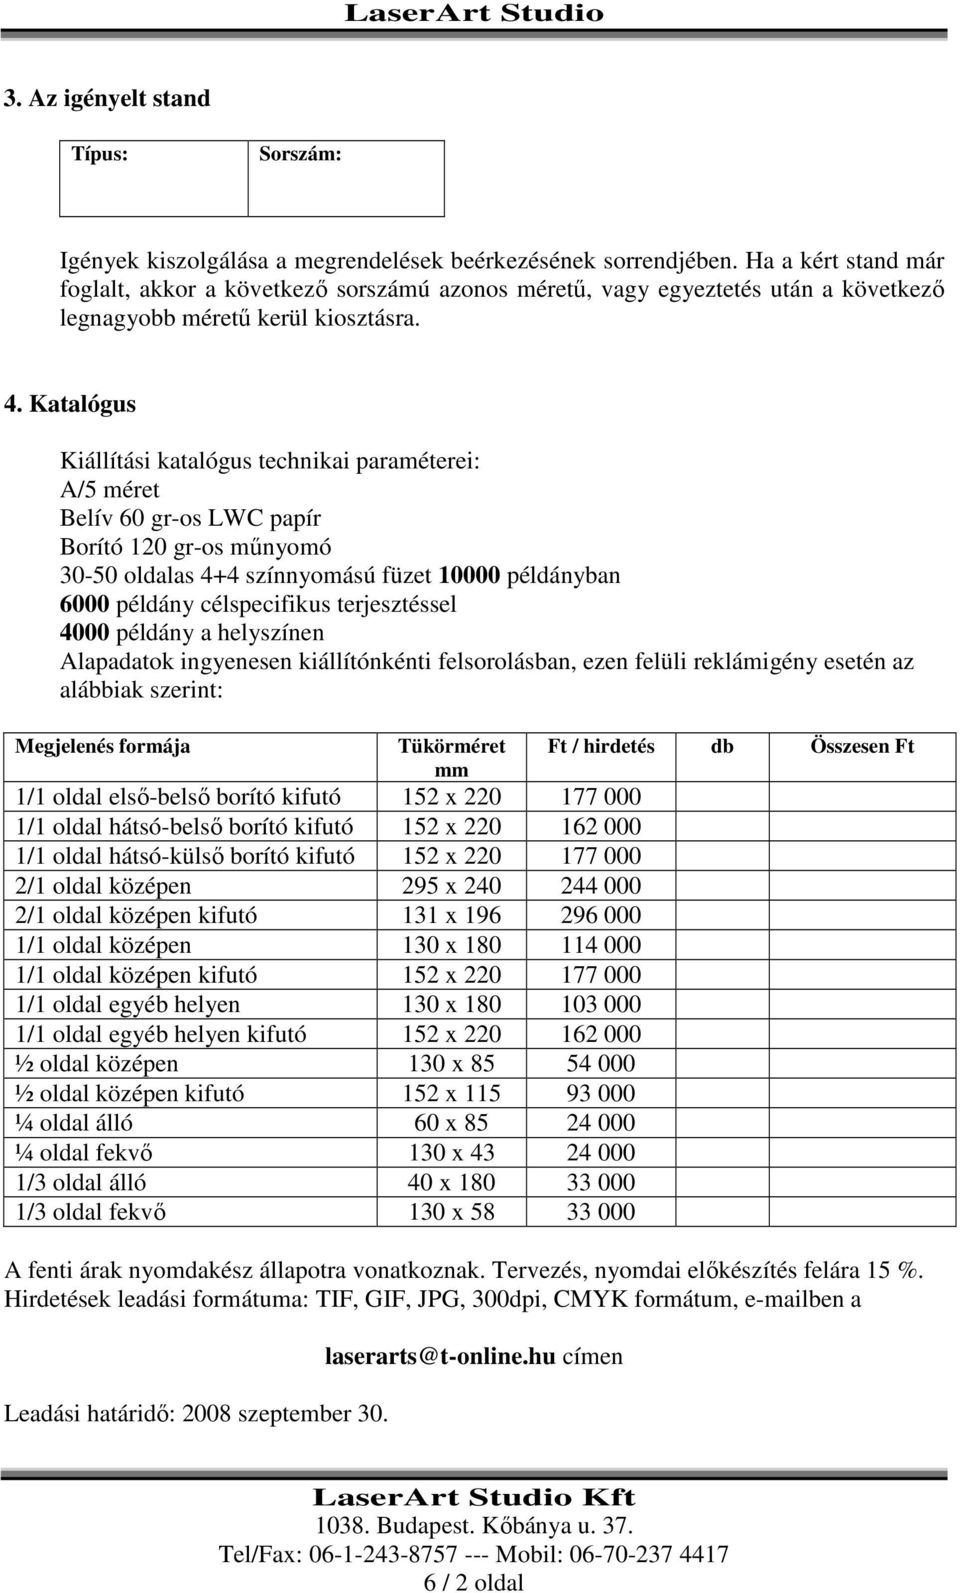 Katalógus Kiállítási katalógus technikai paraméterei: A/5 méret Belív 60 gr-os LWC papír Borító 120 gr-os mőnyomó 30-50 oldalas 4+4 színnyomású füzet 10000 példányban 6000 példány célspecifikus